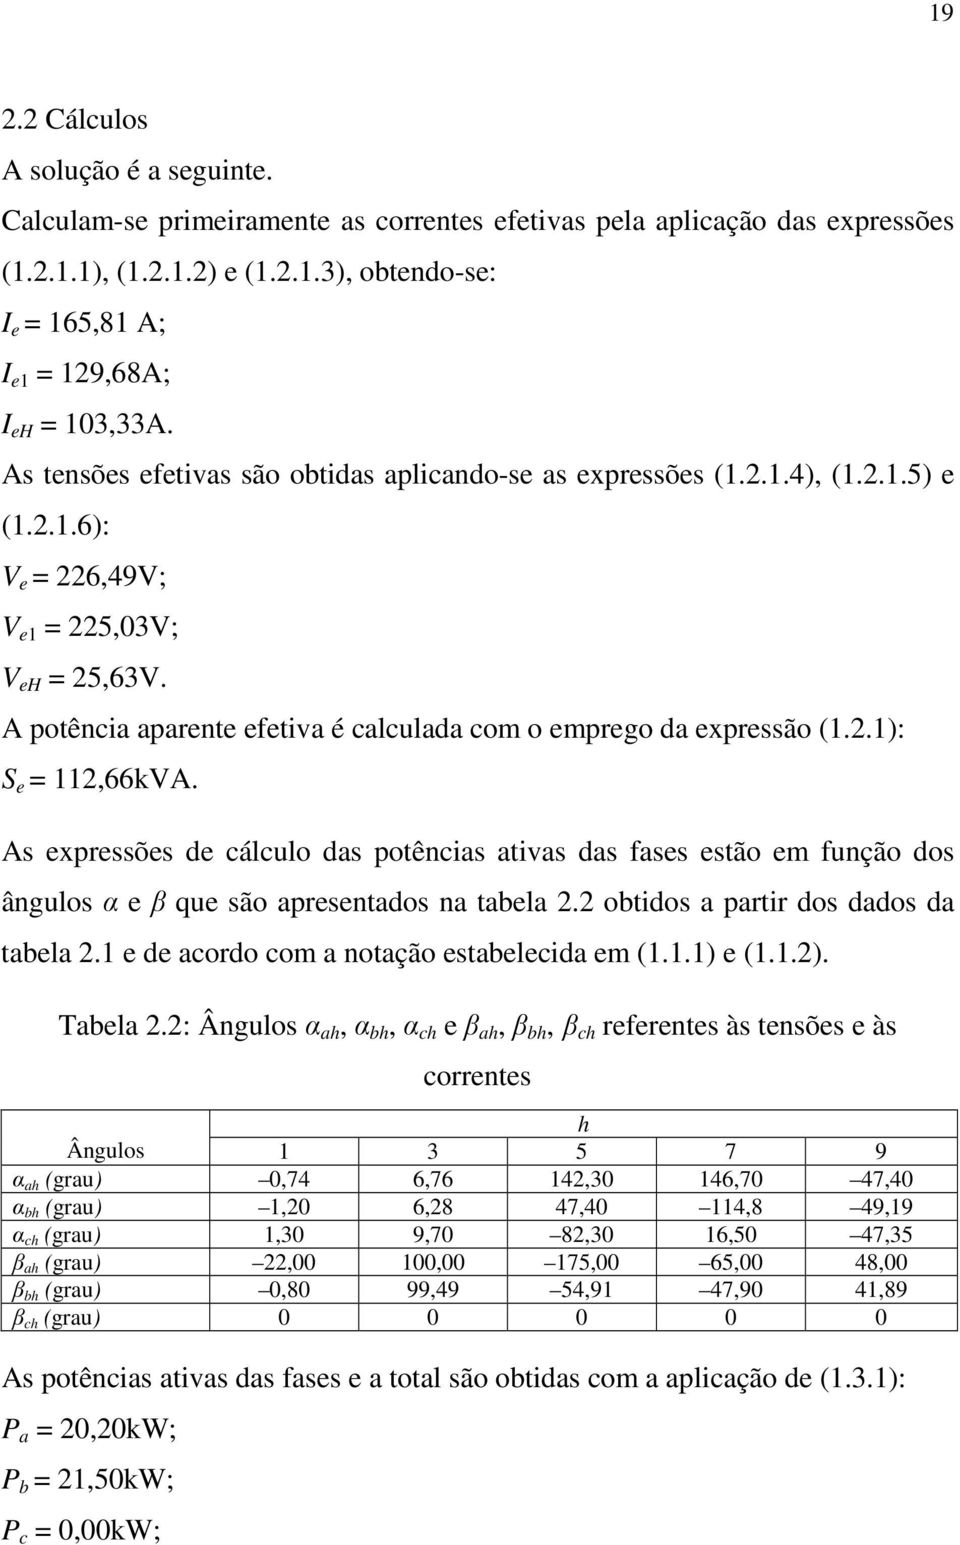 As xprssõs d cálculo das potências ativas das fass stão m função dos ângulos α β qu são aprsntados na tabla. obtidos a partir dos dados da tabla. d acordo com a notação stablcida m (..) (..). Tabla.